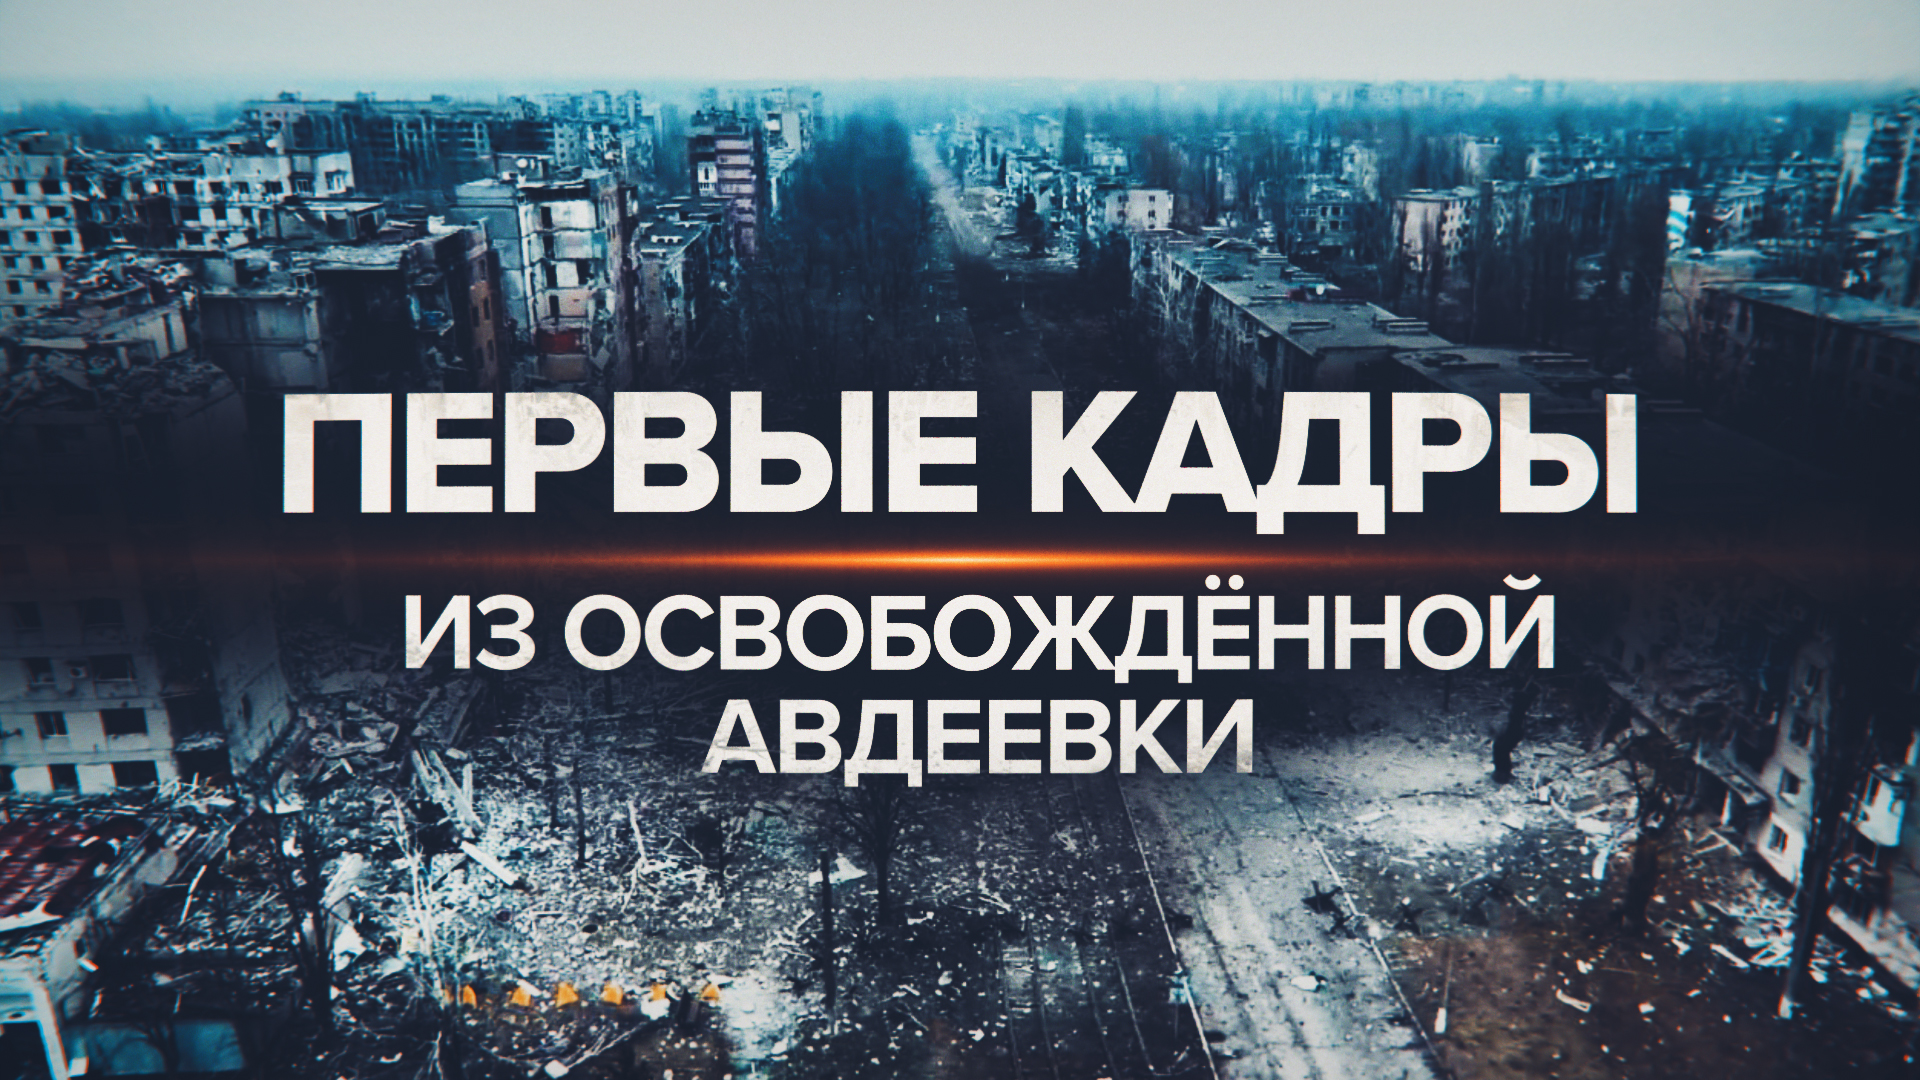 «Город наш, добро пожаловать домой»: российские военные рассказали об обстановке в Авдеевке